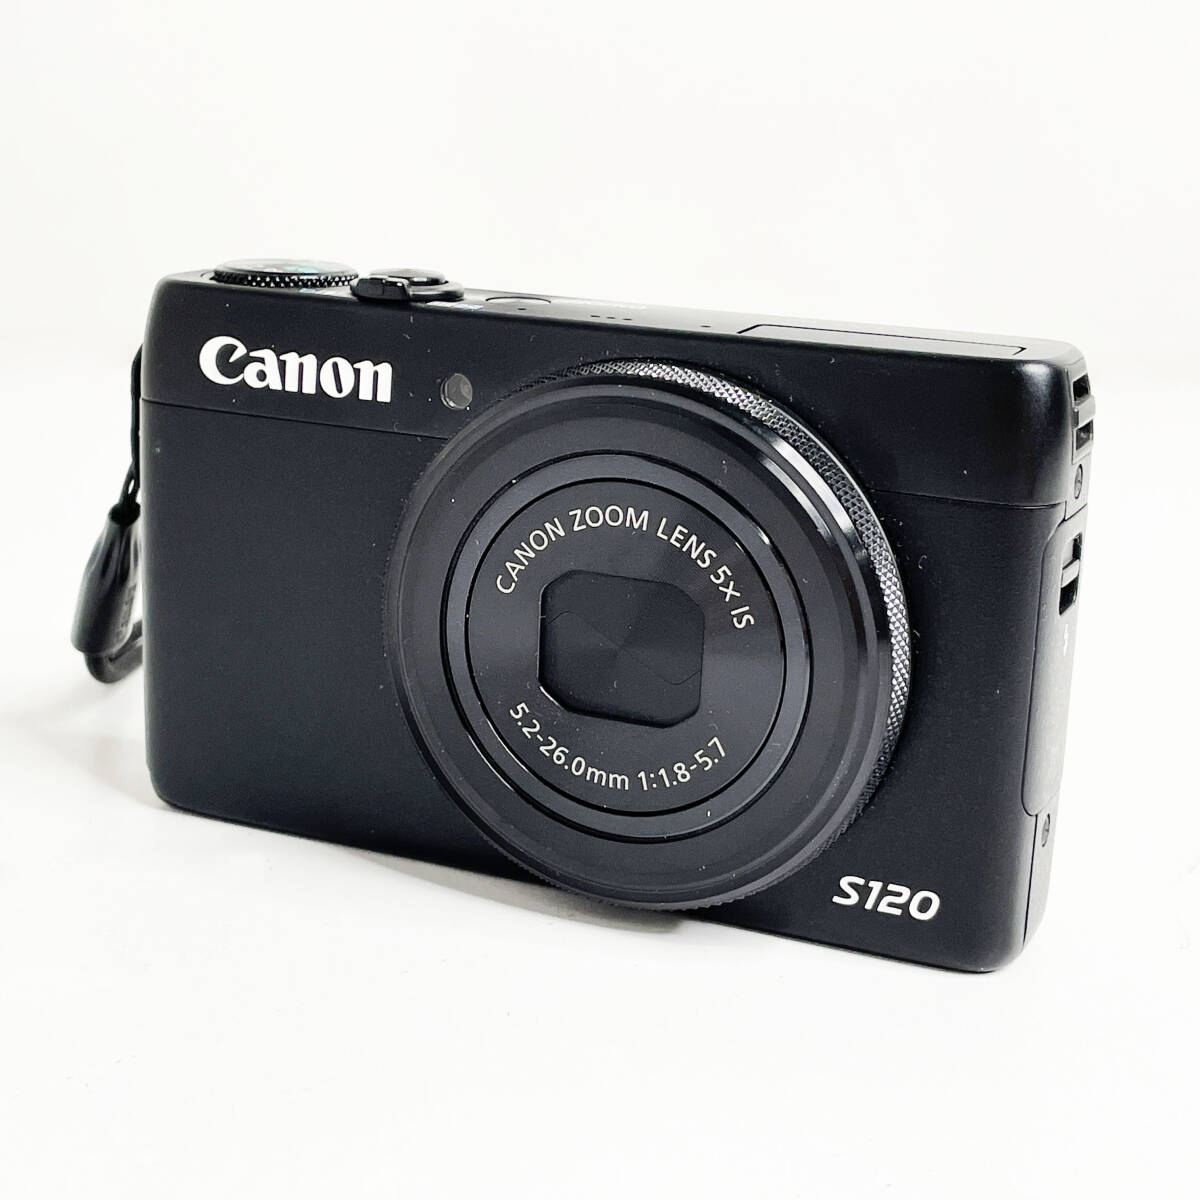 中古☆Canon コンパクトデジタルカメラ PowerShot S120 ブラック デジカメ キャノン パワーショット Wi-Fi対応 タッチパネル 付属品あり